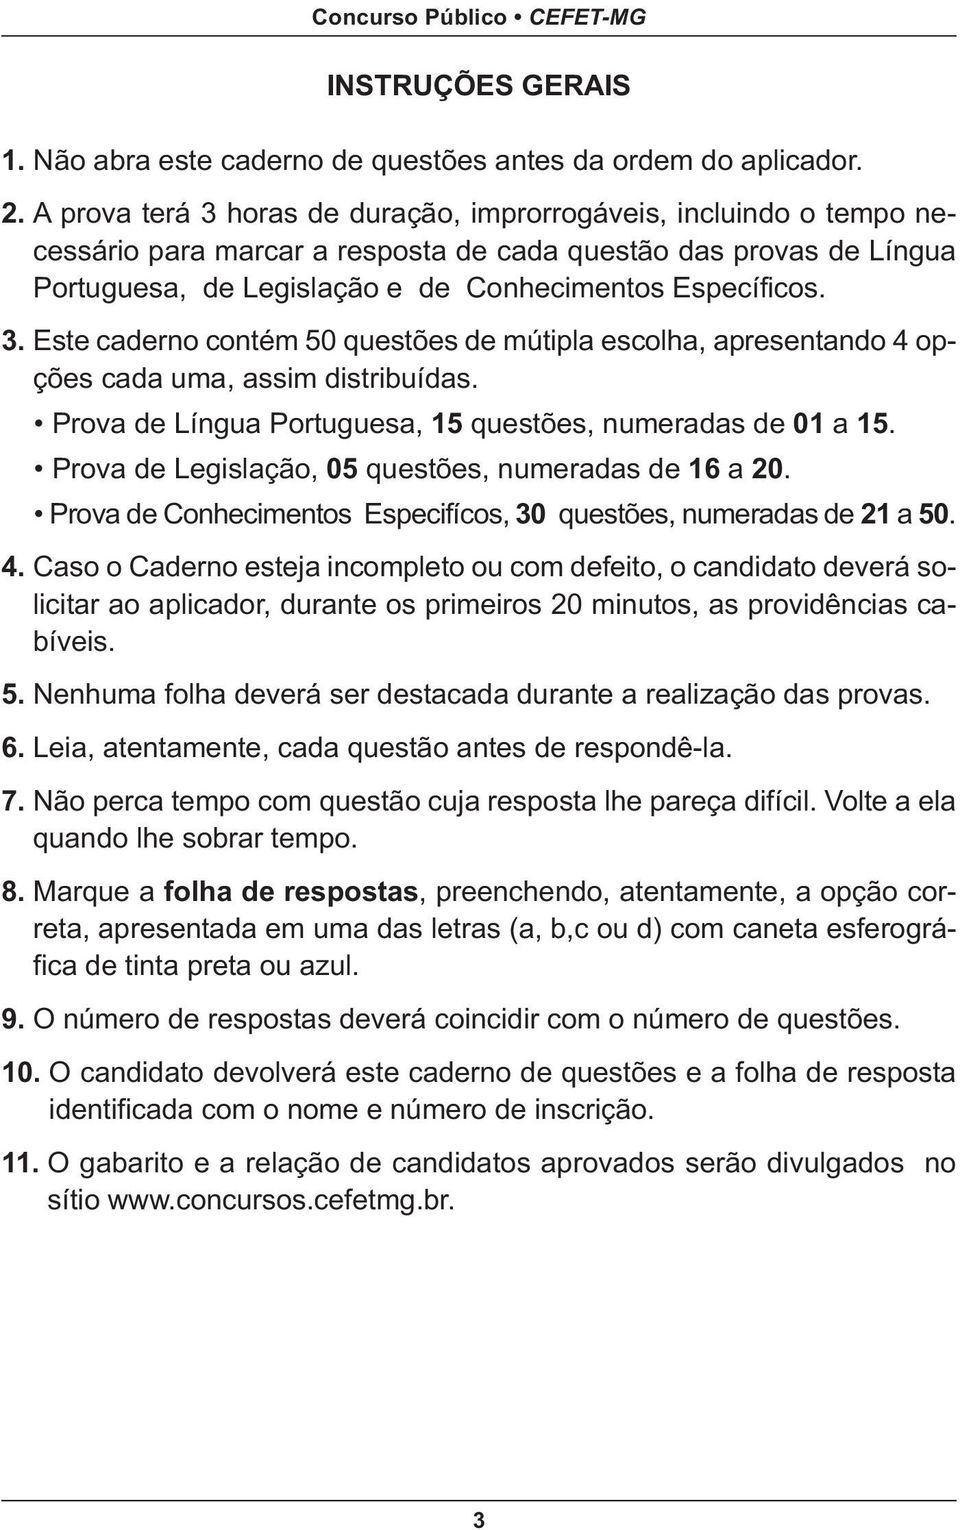 Prova de Língua Portuguesa, 15 questões, numeradas de 01 a 15. Prova de Legislação, 05 questões, numeradas de 16 a 20. Prova de Conhecimentos Especifícos, 30 questões, numeradas de 21 a 50. 4.